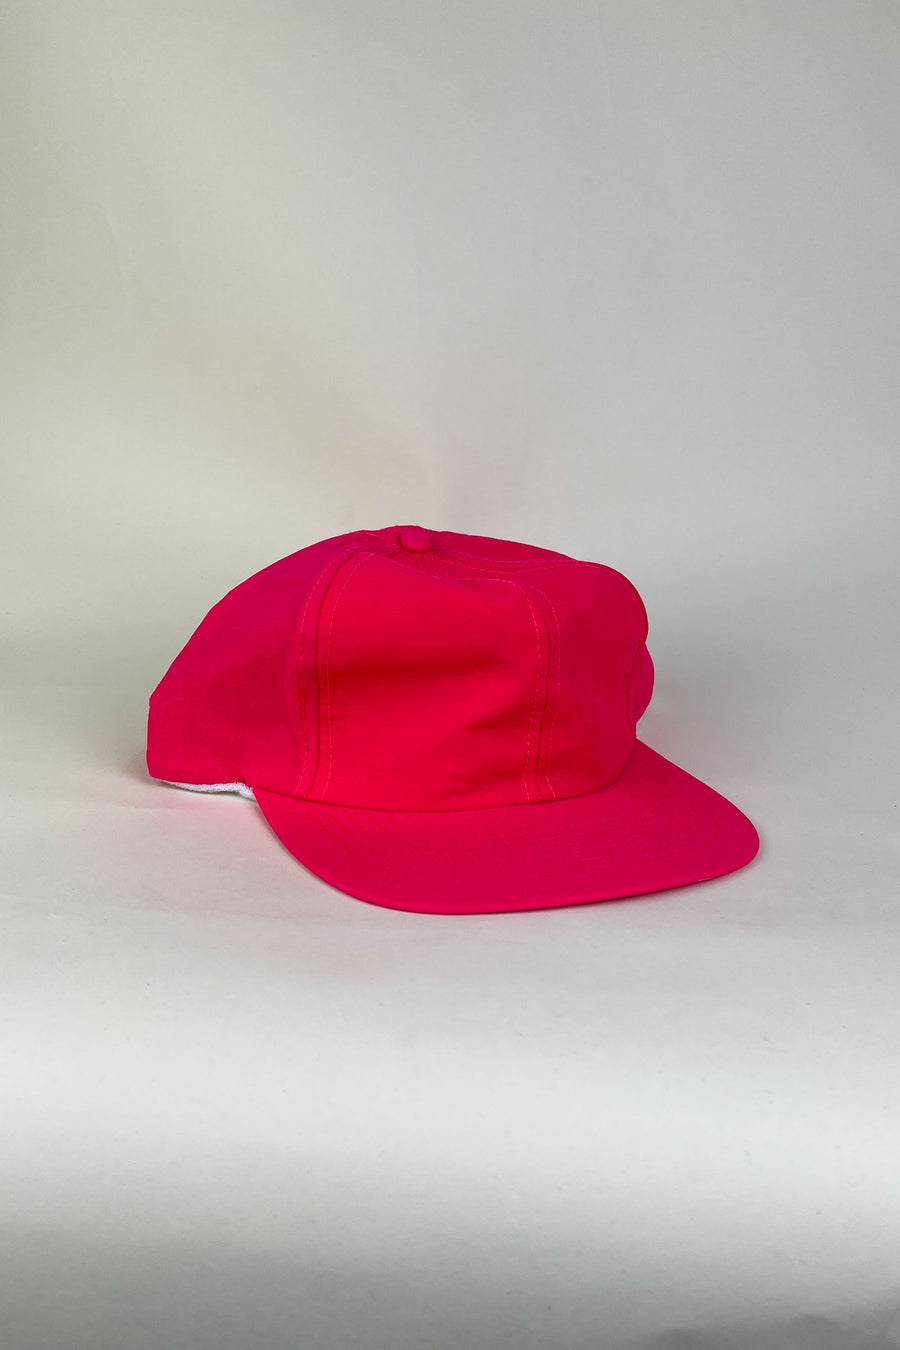 Vintage Deadstock Red/Pink Snapback Hat